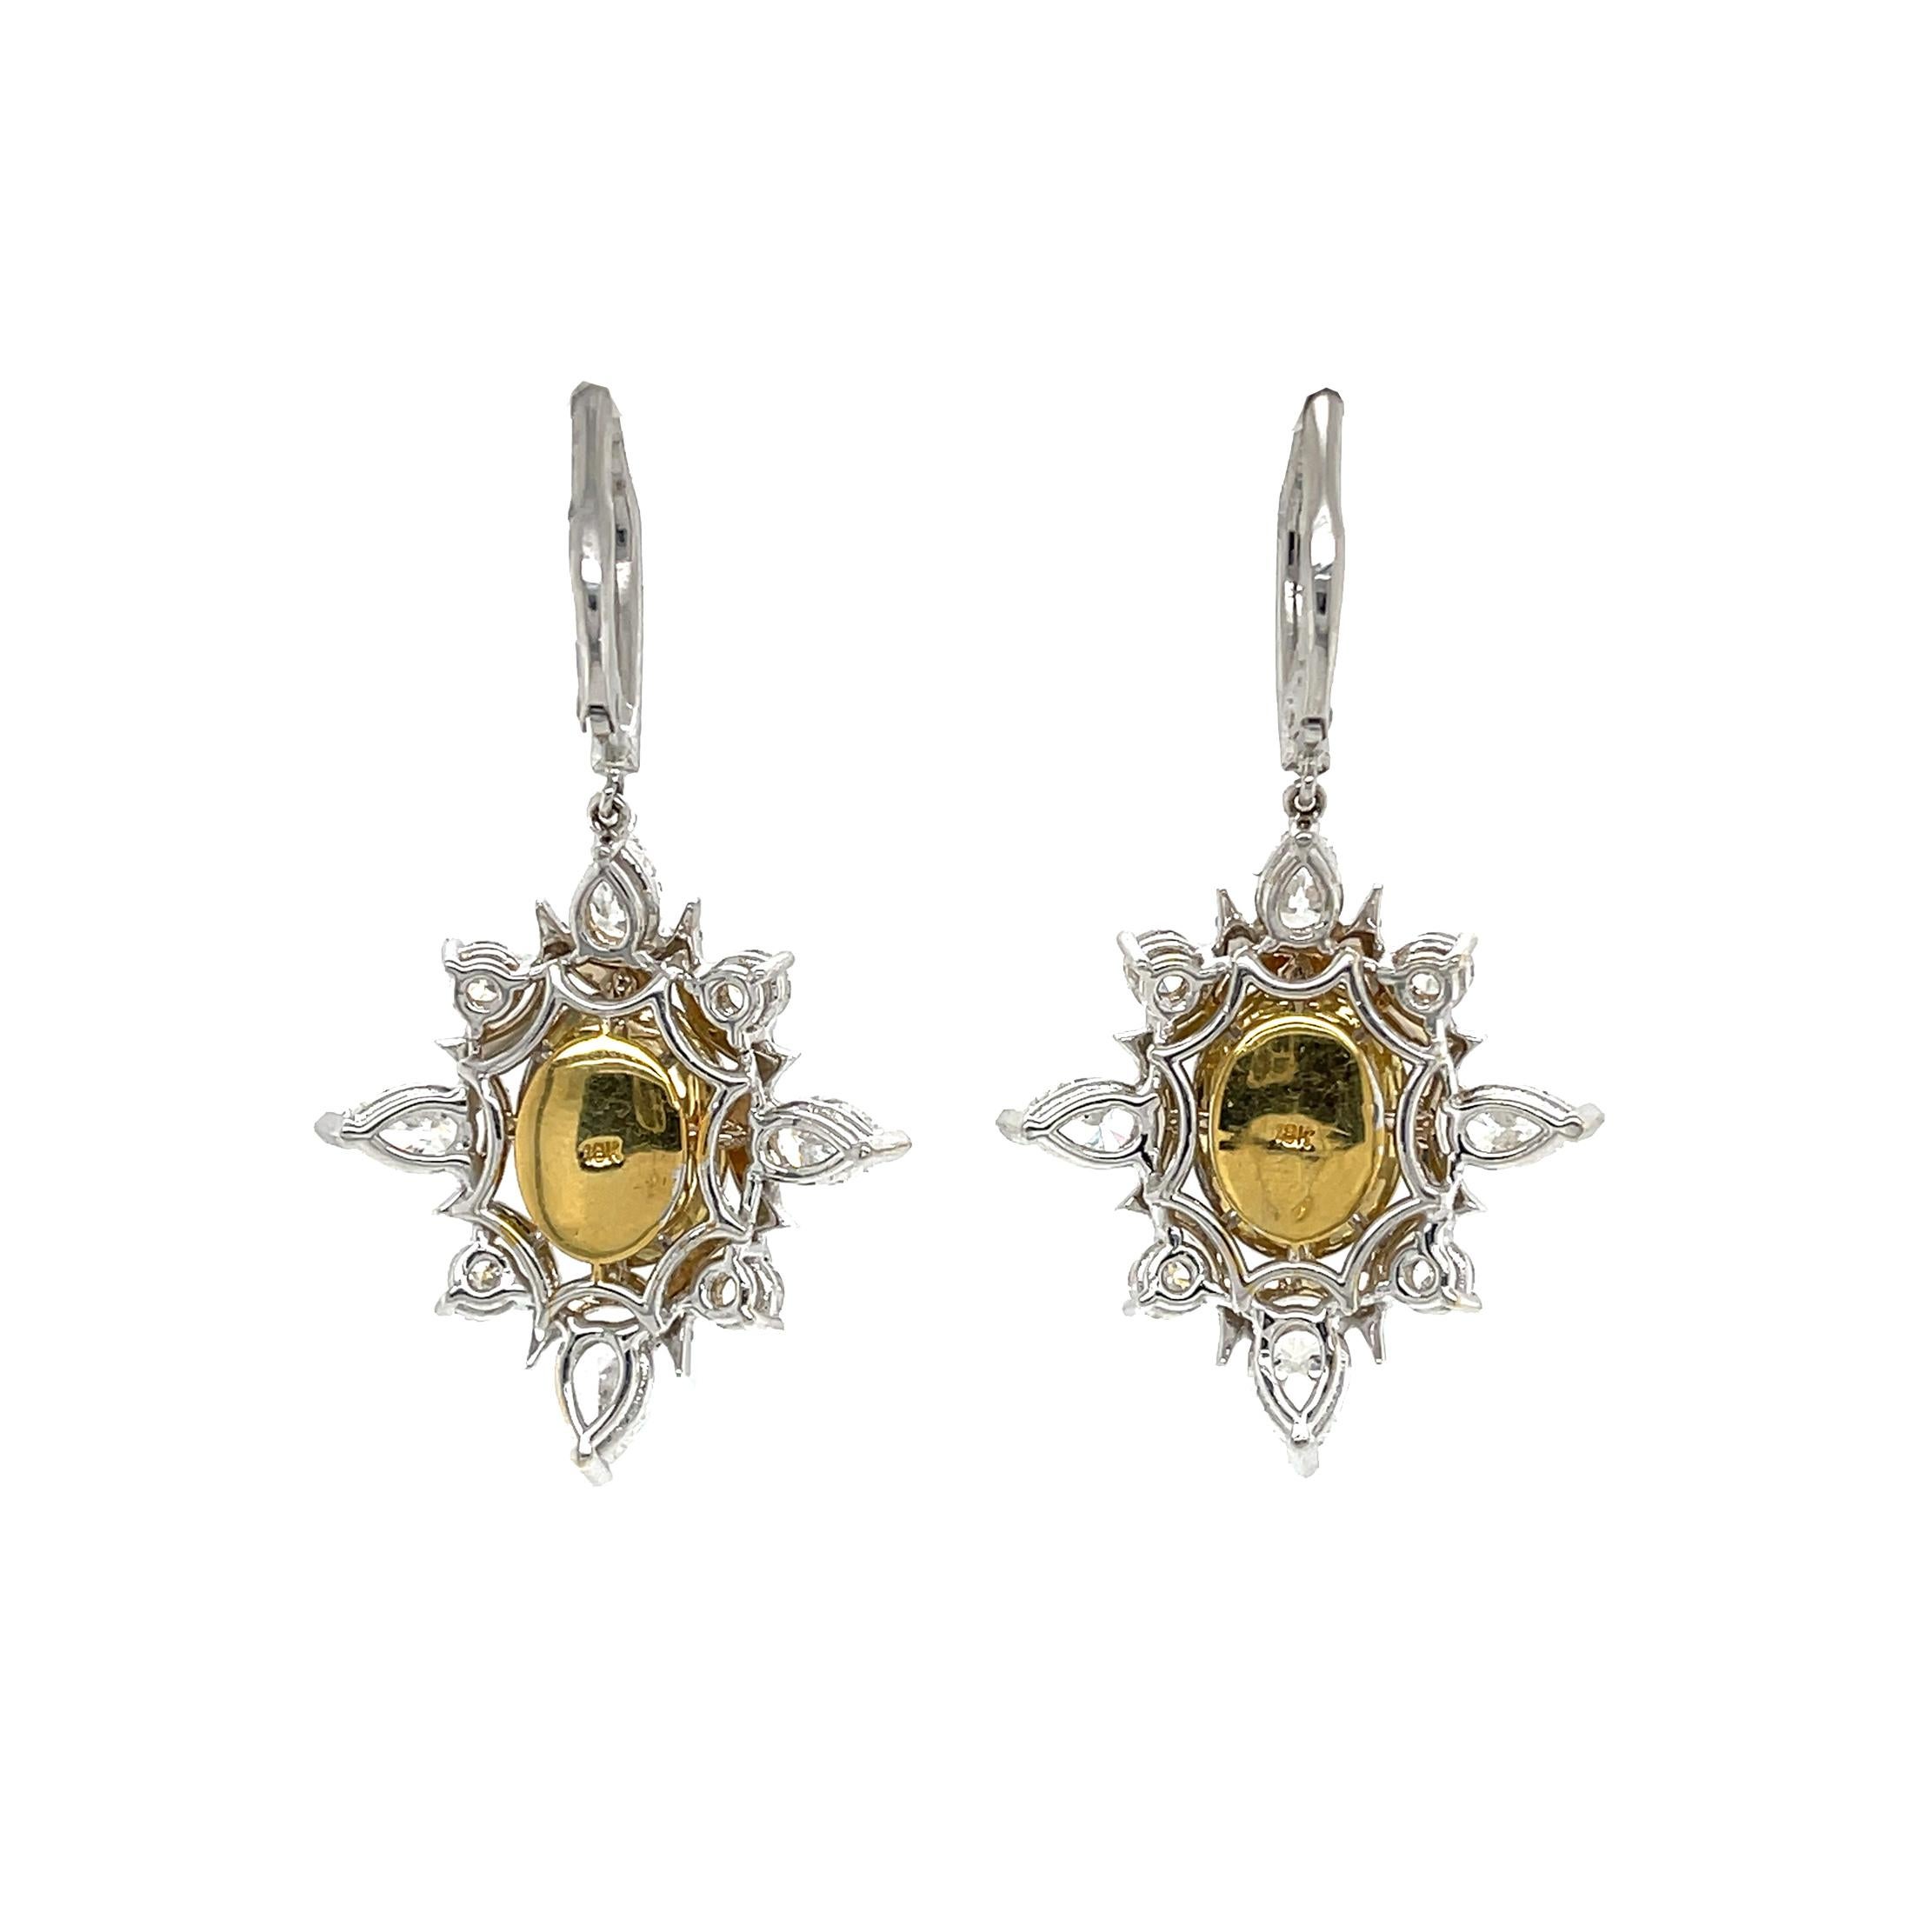 Art Deco 4 Carat Fancy Light Yellow Diamond Drop Earrings, Gia Certified IF, in 18k Gold. For Sale